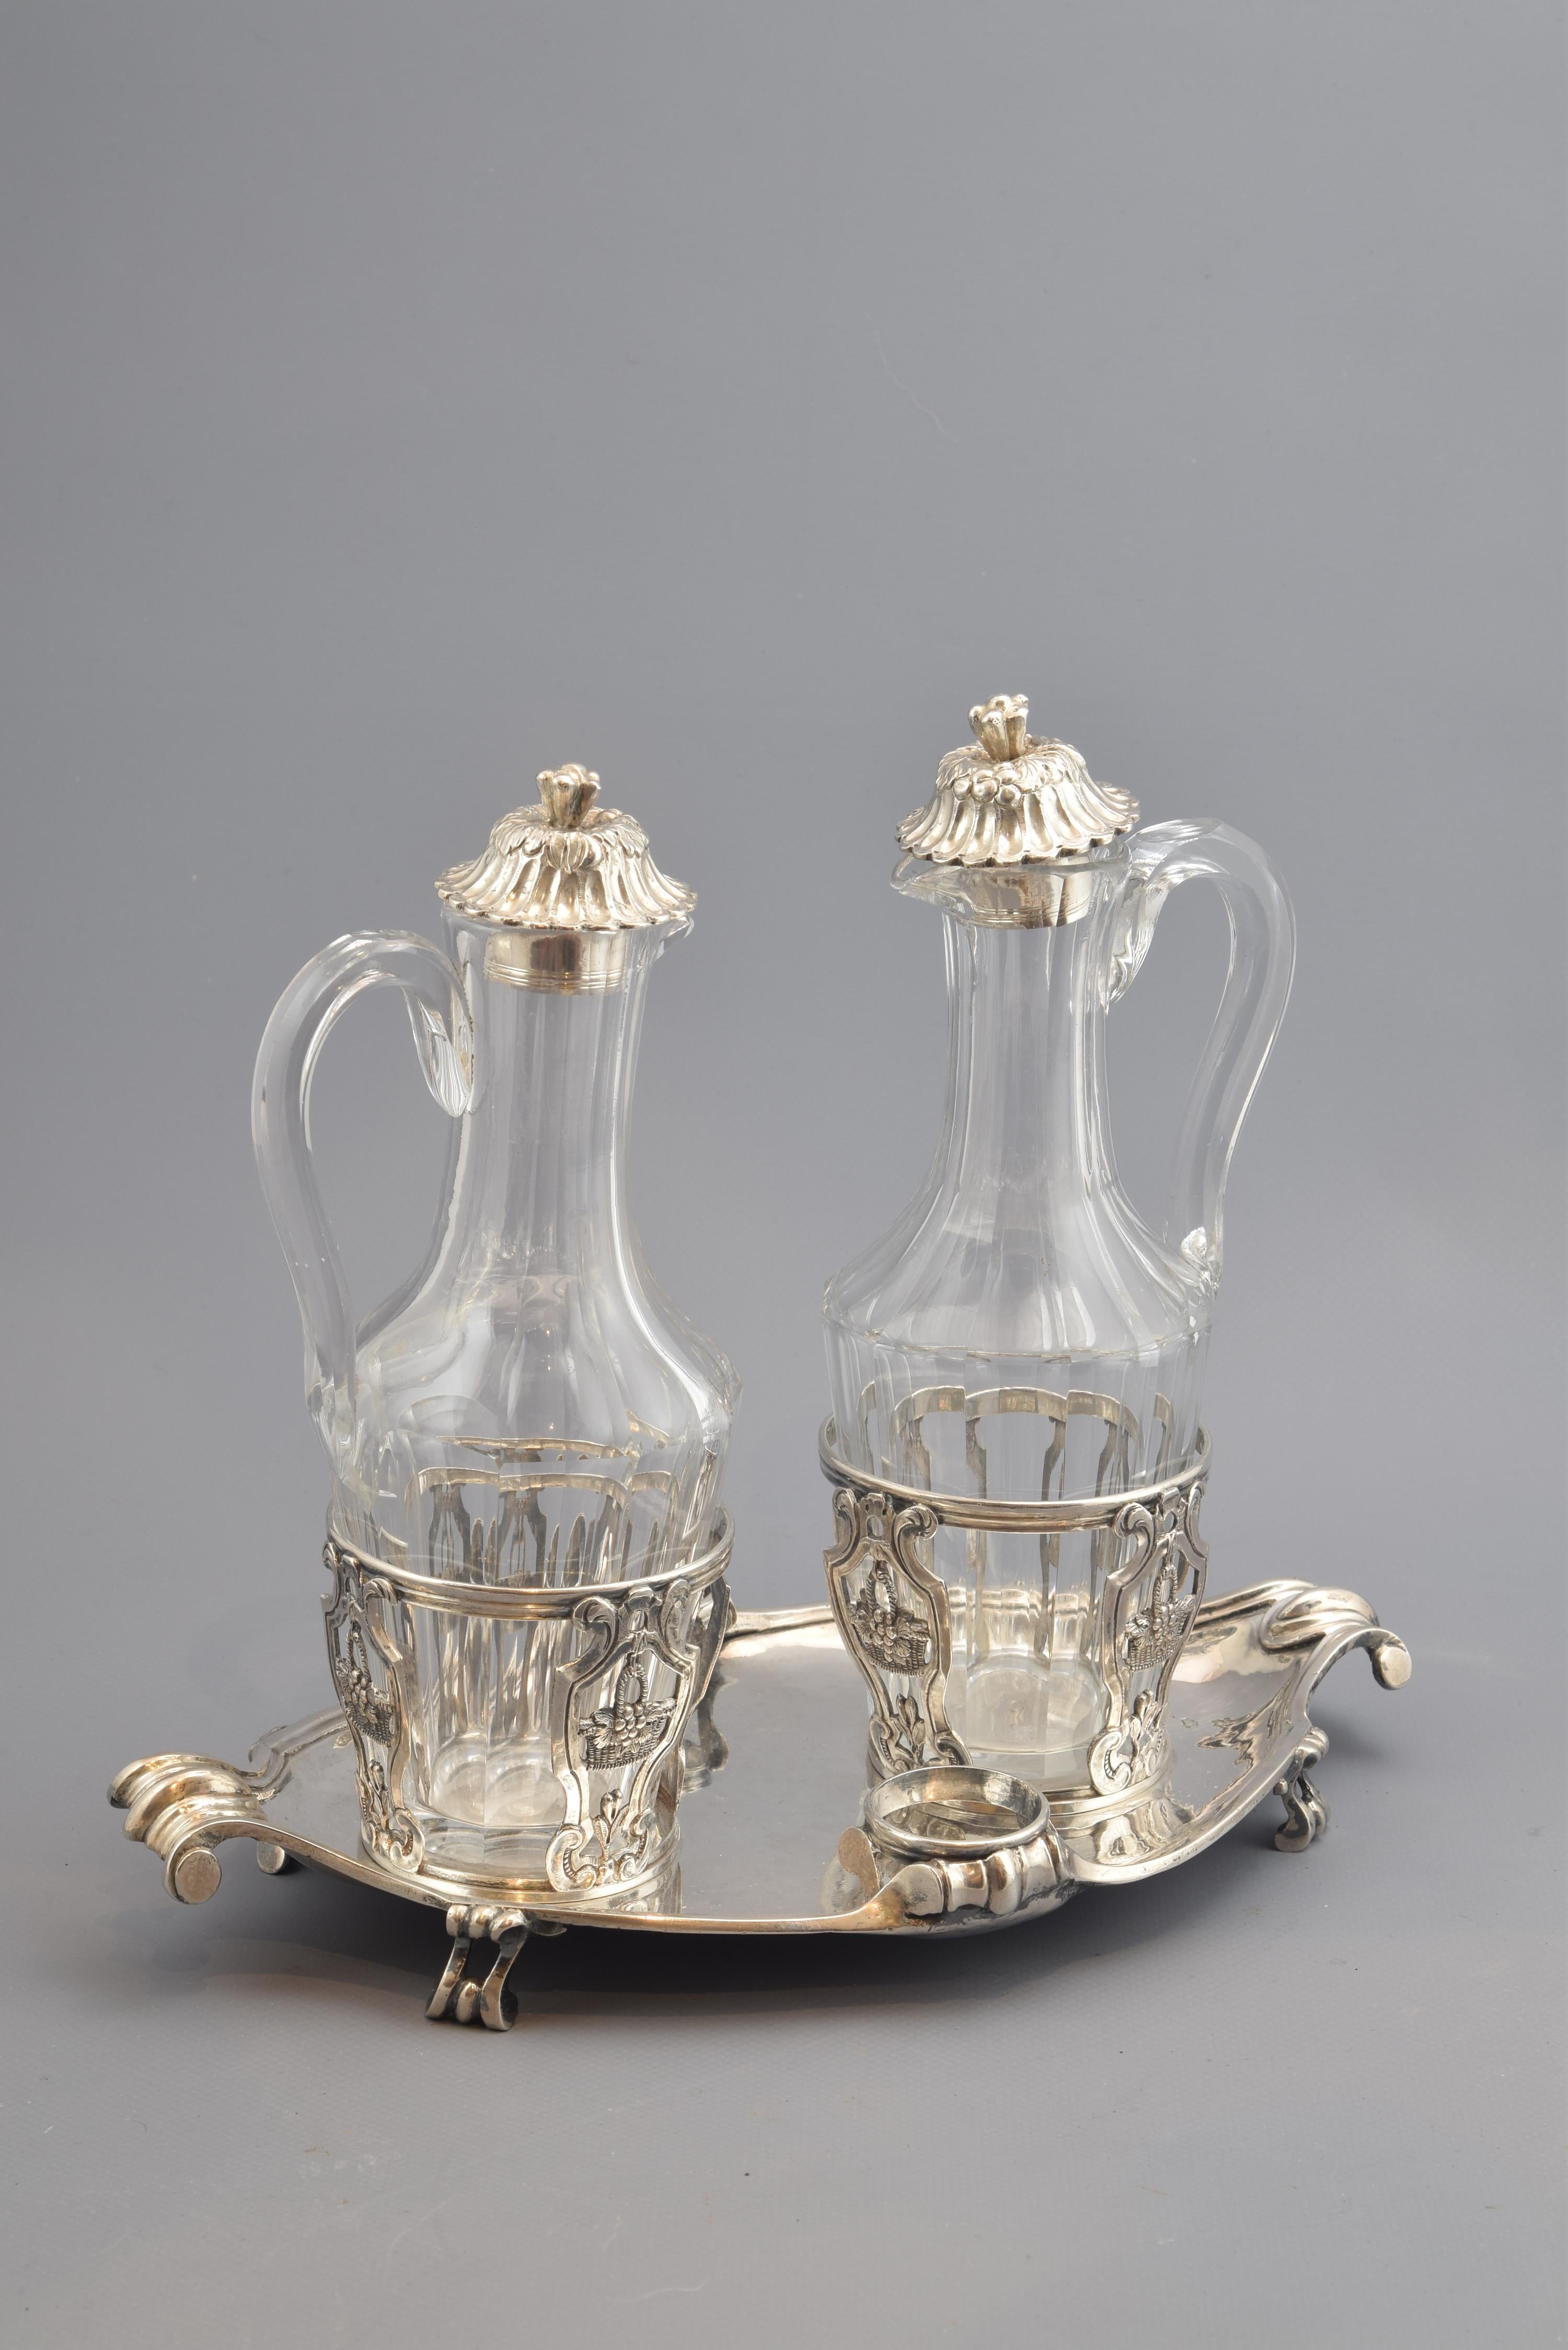 Cruet Set, Silver, Glass, René-Pierre Ferrier, Paris, France, 1775 For Sale 2